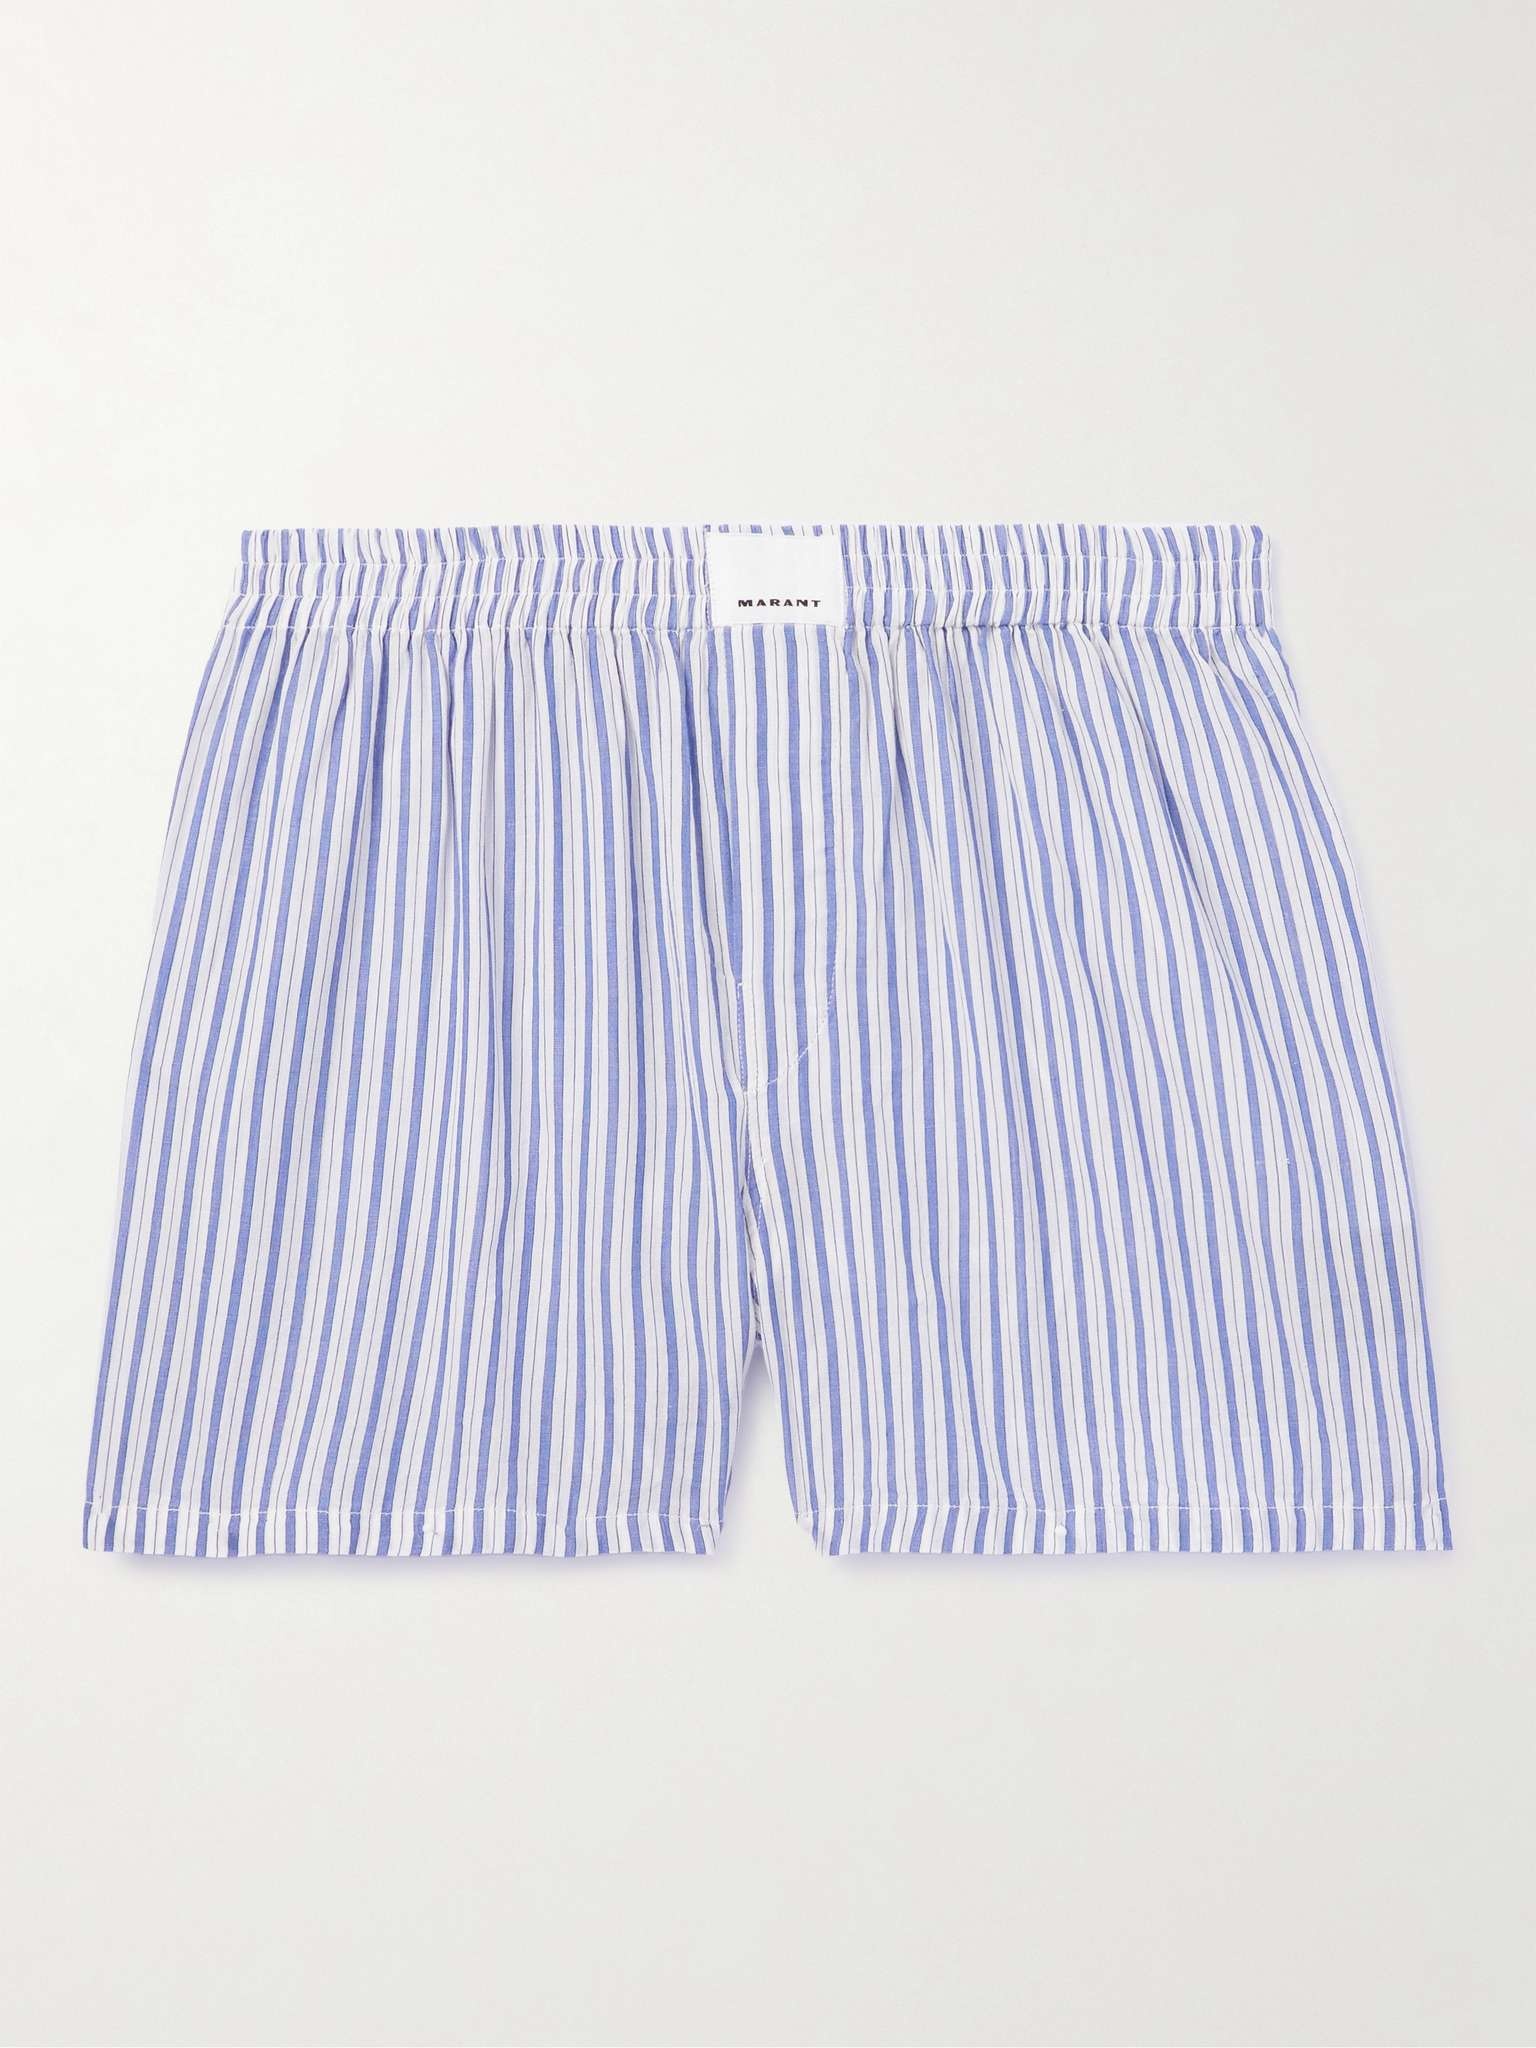 Barny Striped Boxer Shorts - 1